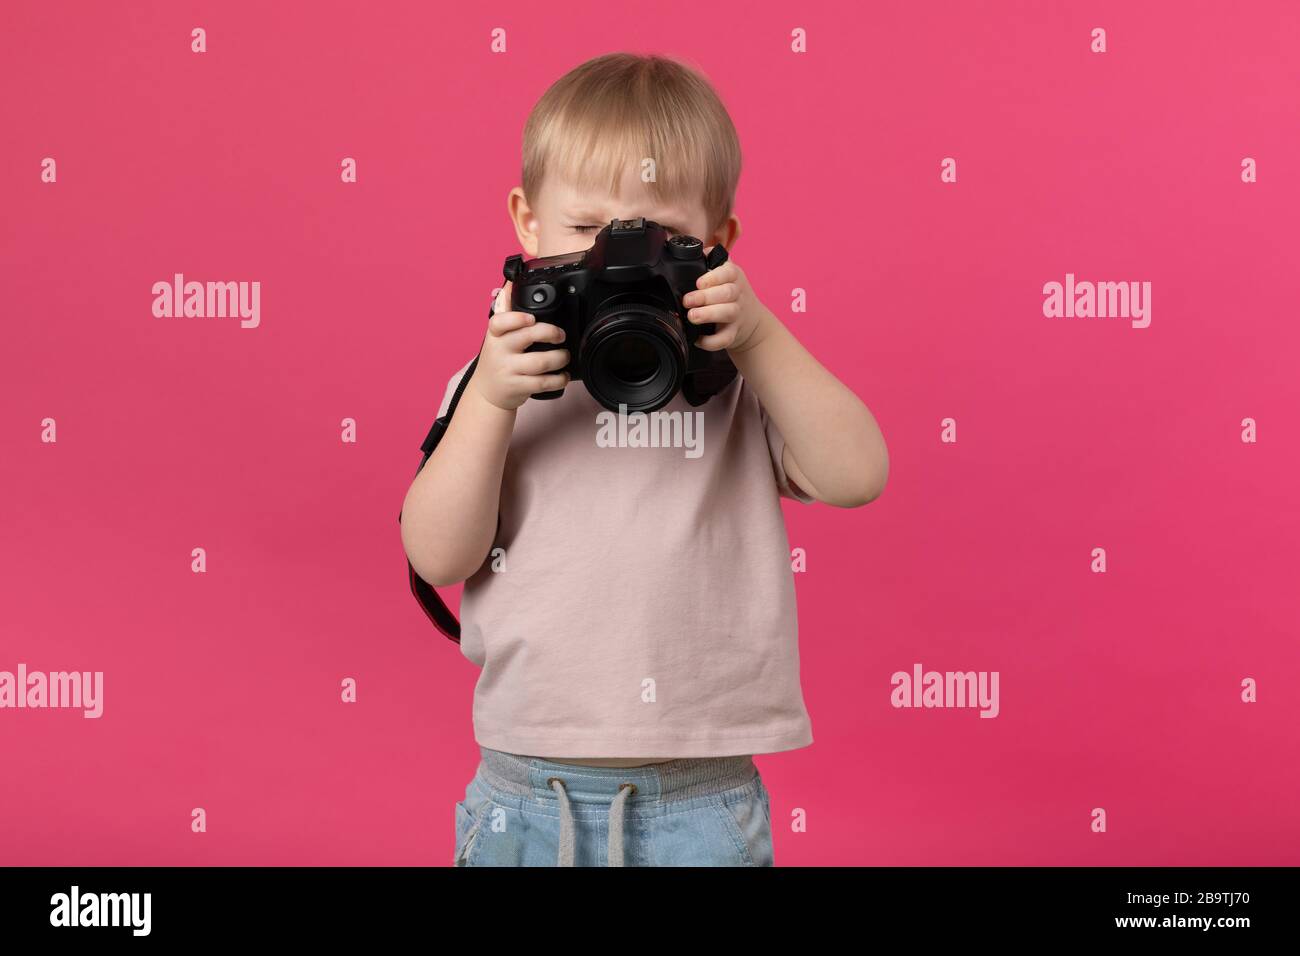 Ein kleiner Junge europäischer Erscheinung blonde Fotografien mit einer Kamera. Nahaufnahme des Studios auf einem rosafarbenen Hintergrund für Artikel über die Rekrutierung von Schulen Stockfoto